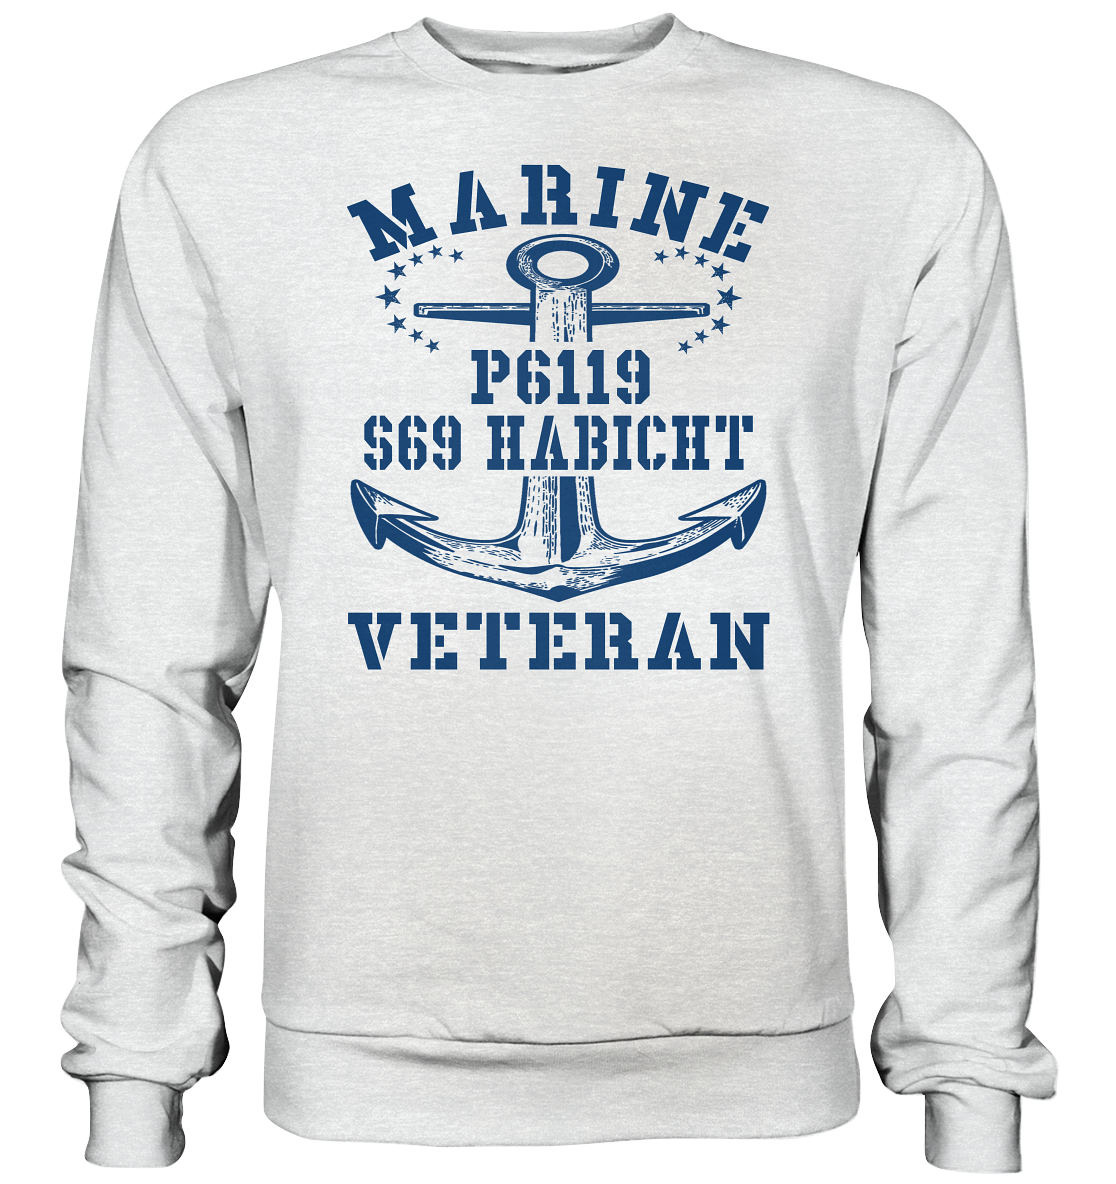 FK-Schnellboot P6119 HABICHT Marine Veteran - Premium Sweatshirt